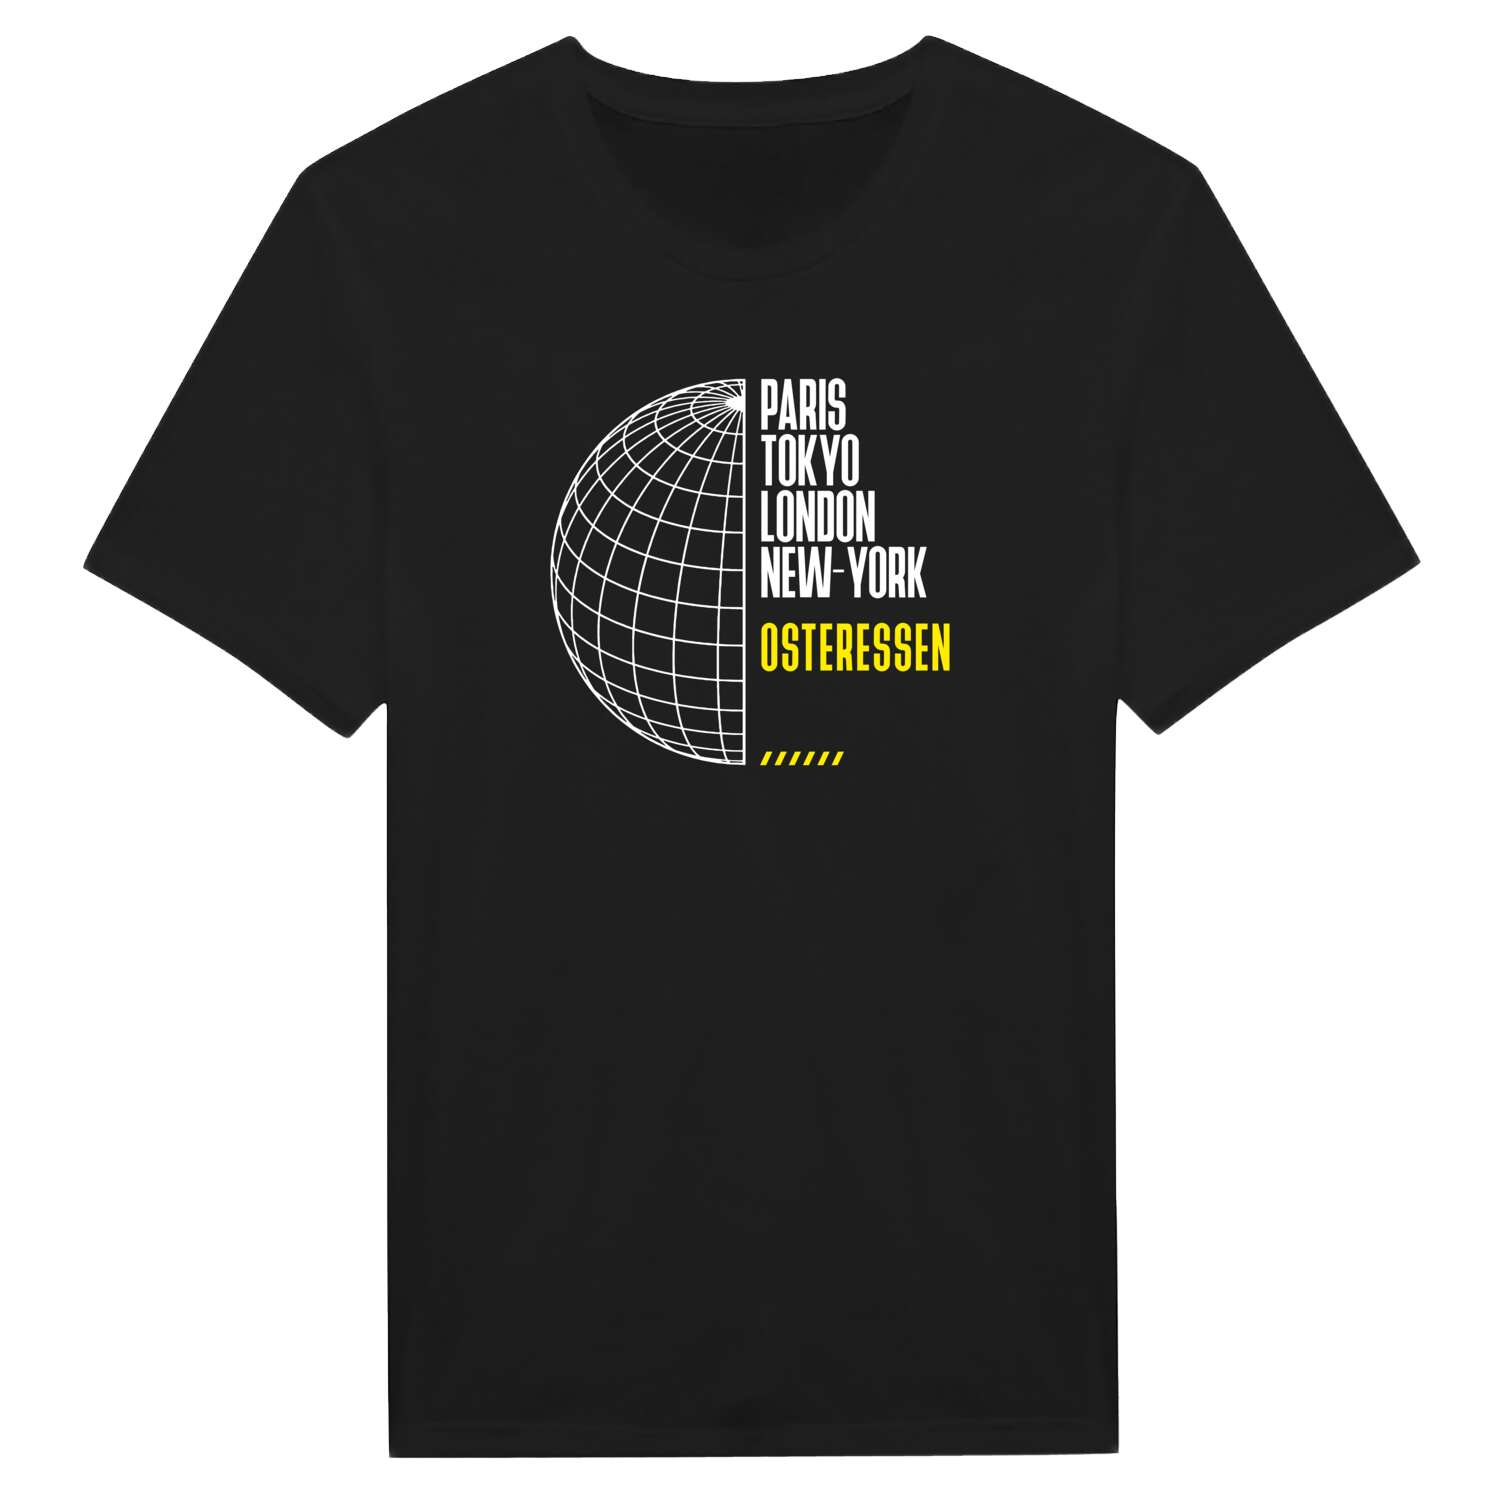 Osteressen T-Shirt »Paris Tokyo London«